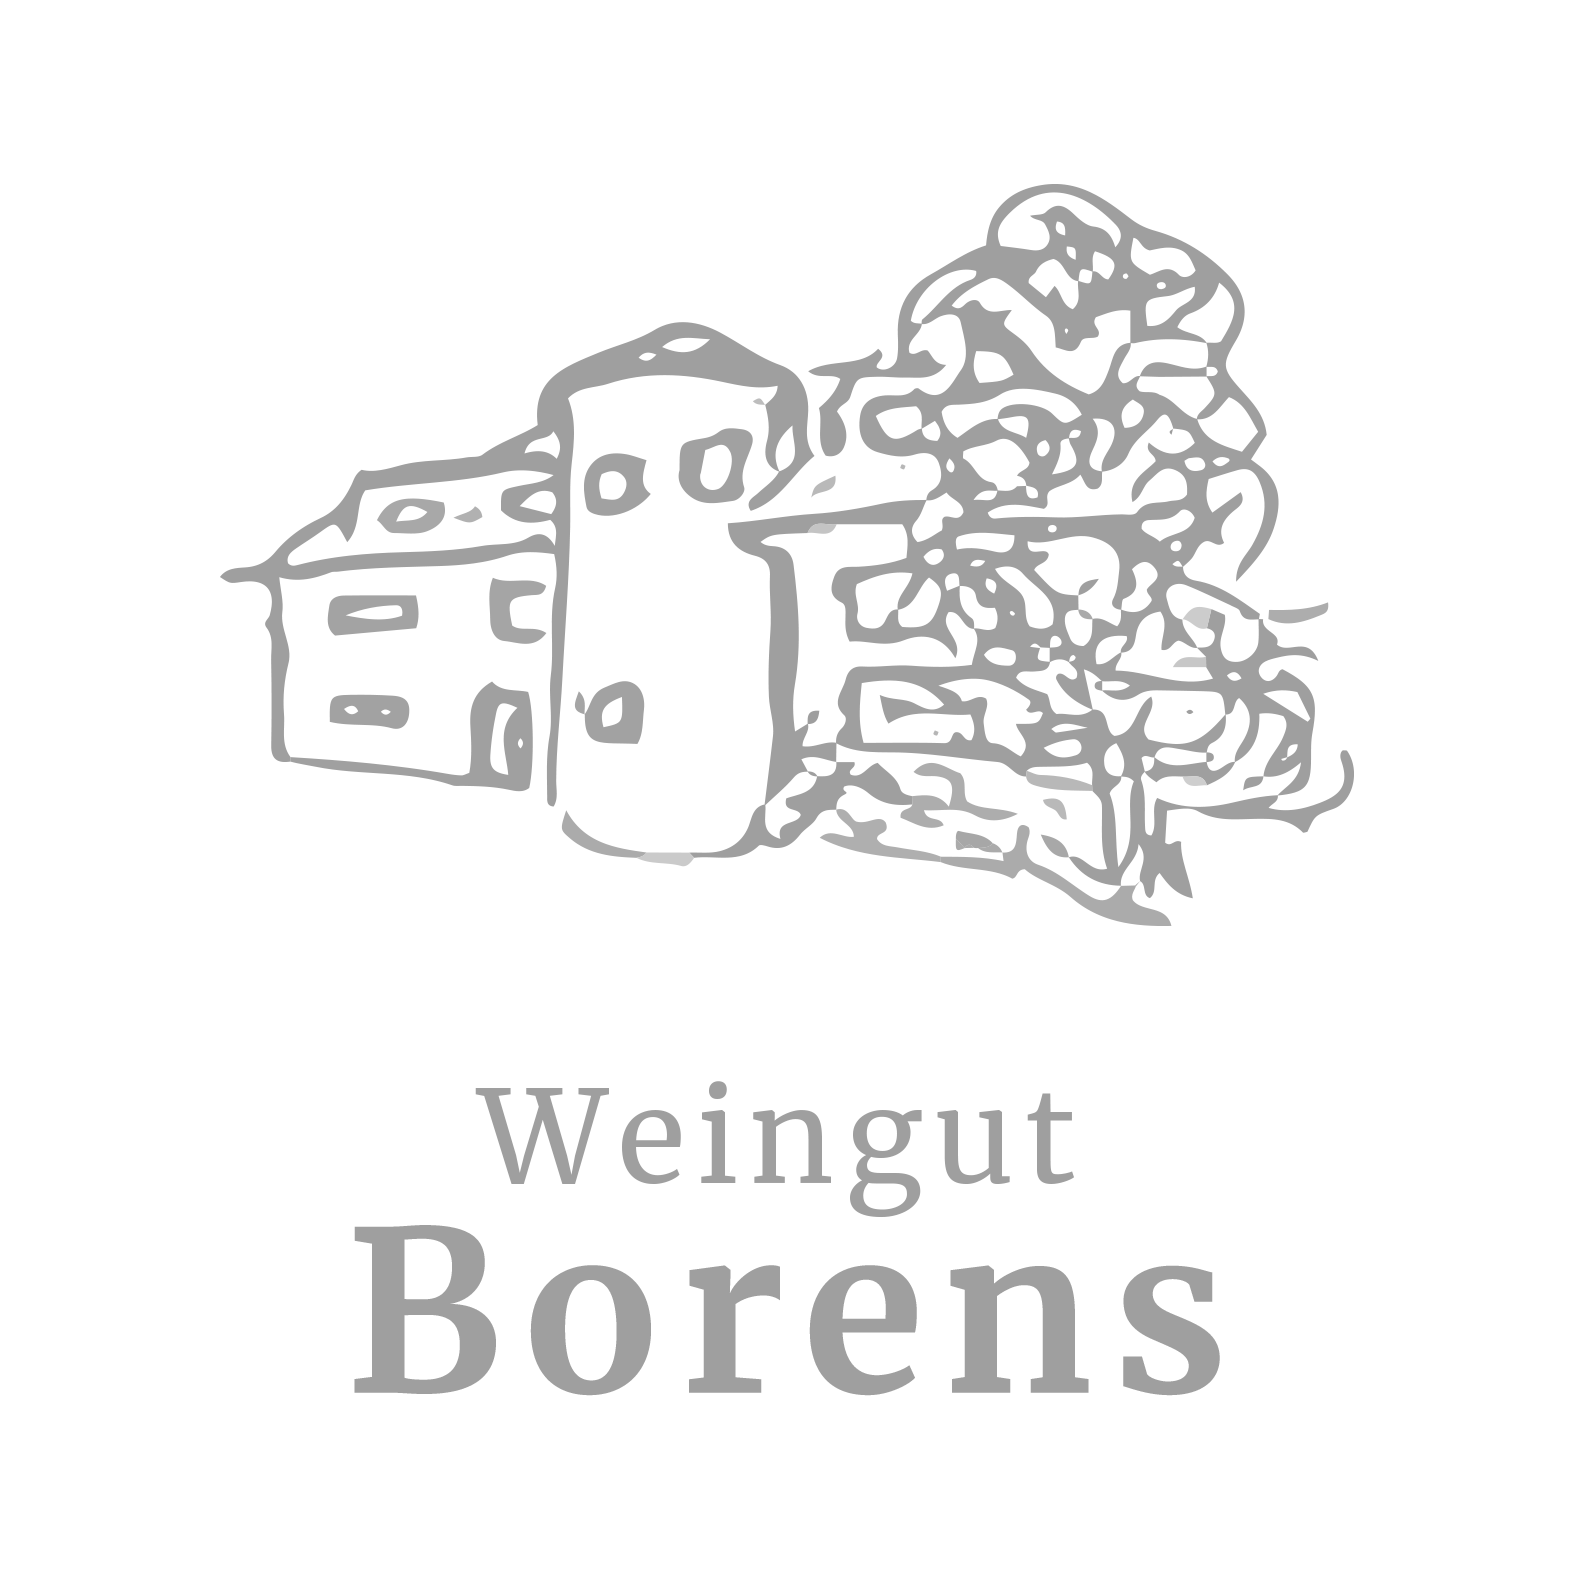 (c) Weingut-borens.de